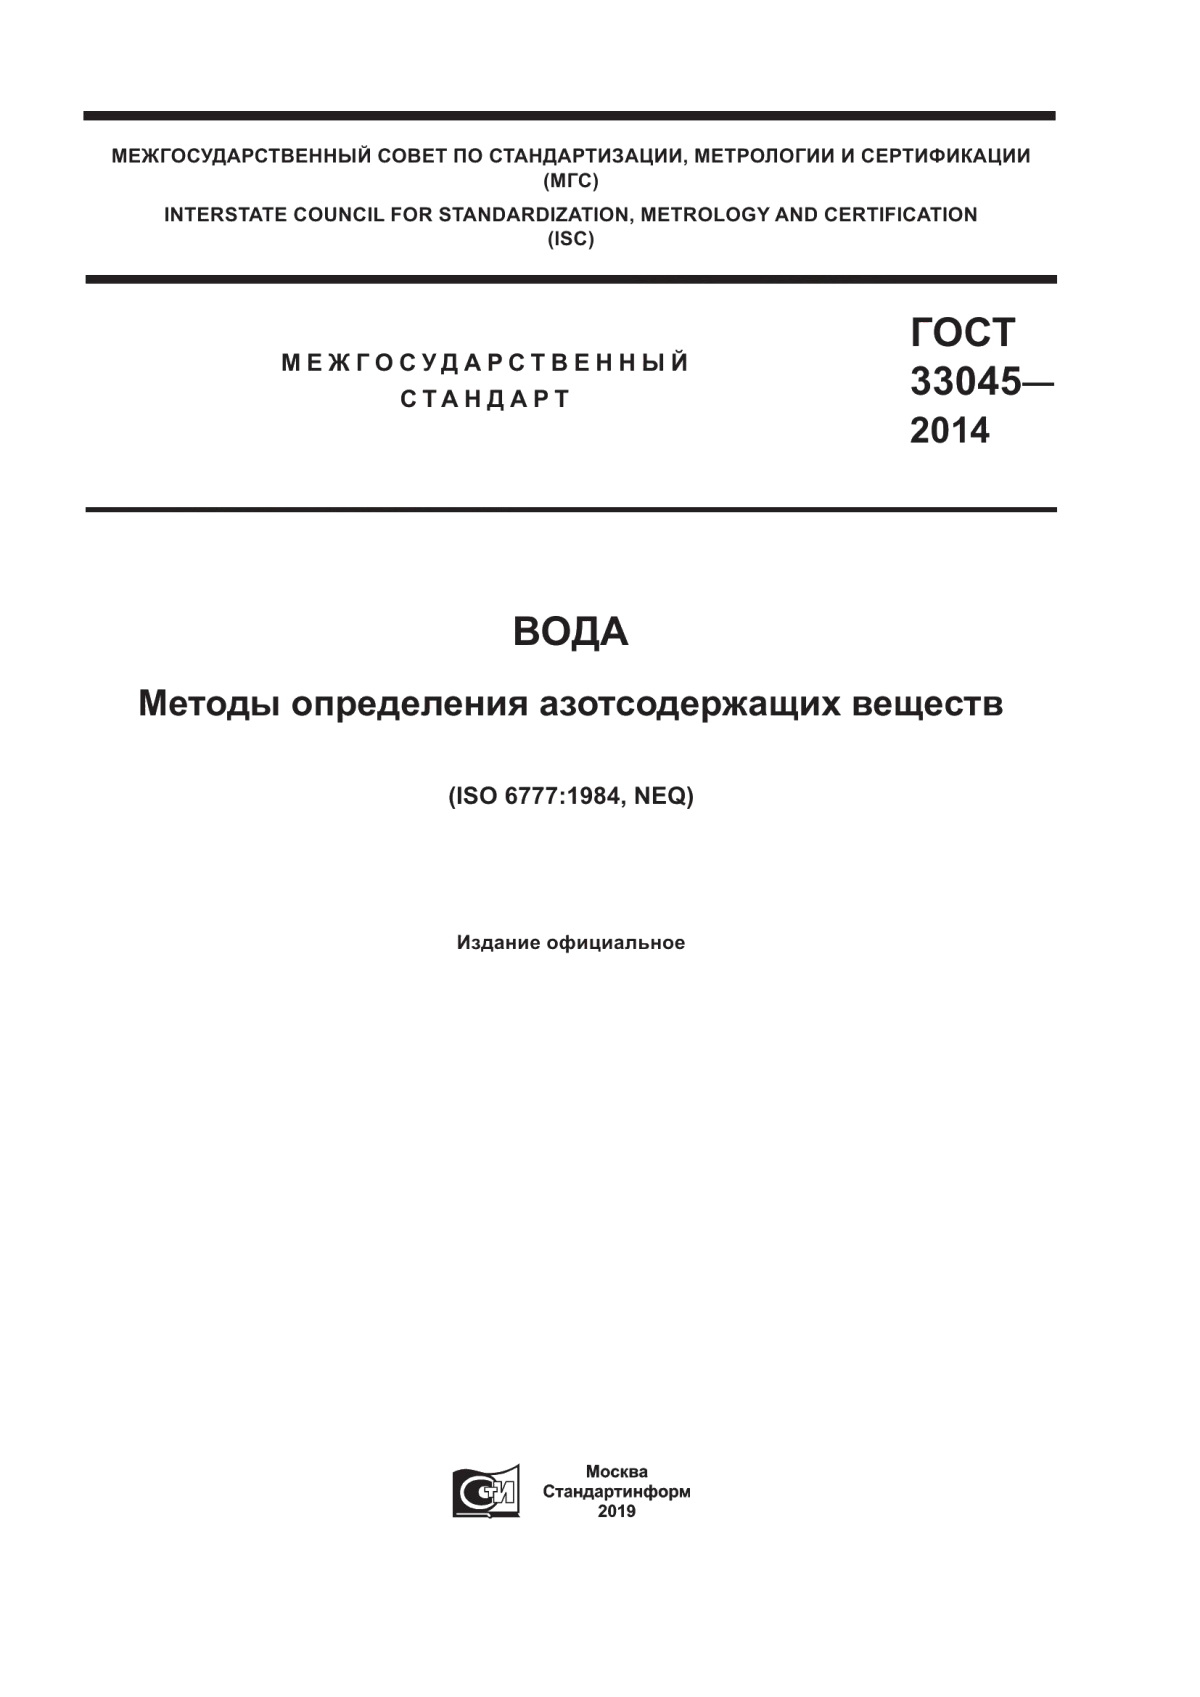 ГОСТ 33045-2014 Вода. Методы определения азотсодержащих веществ